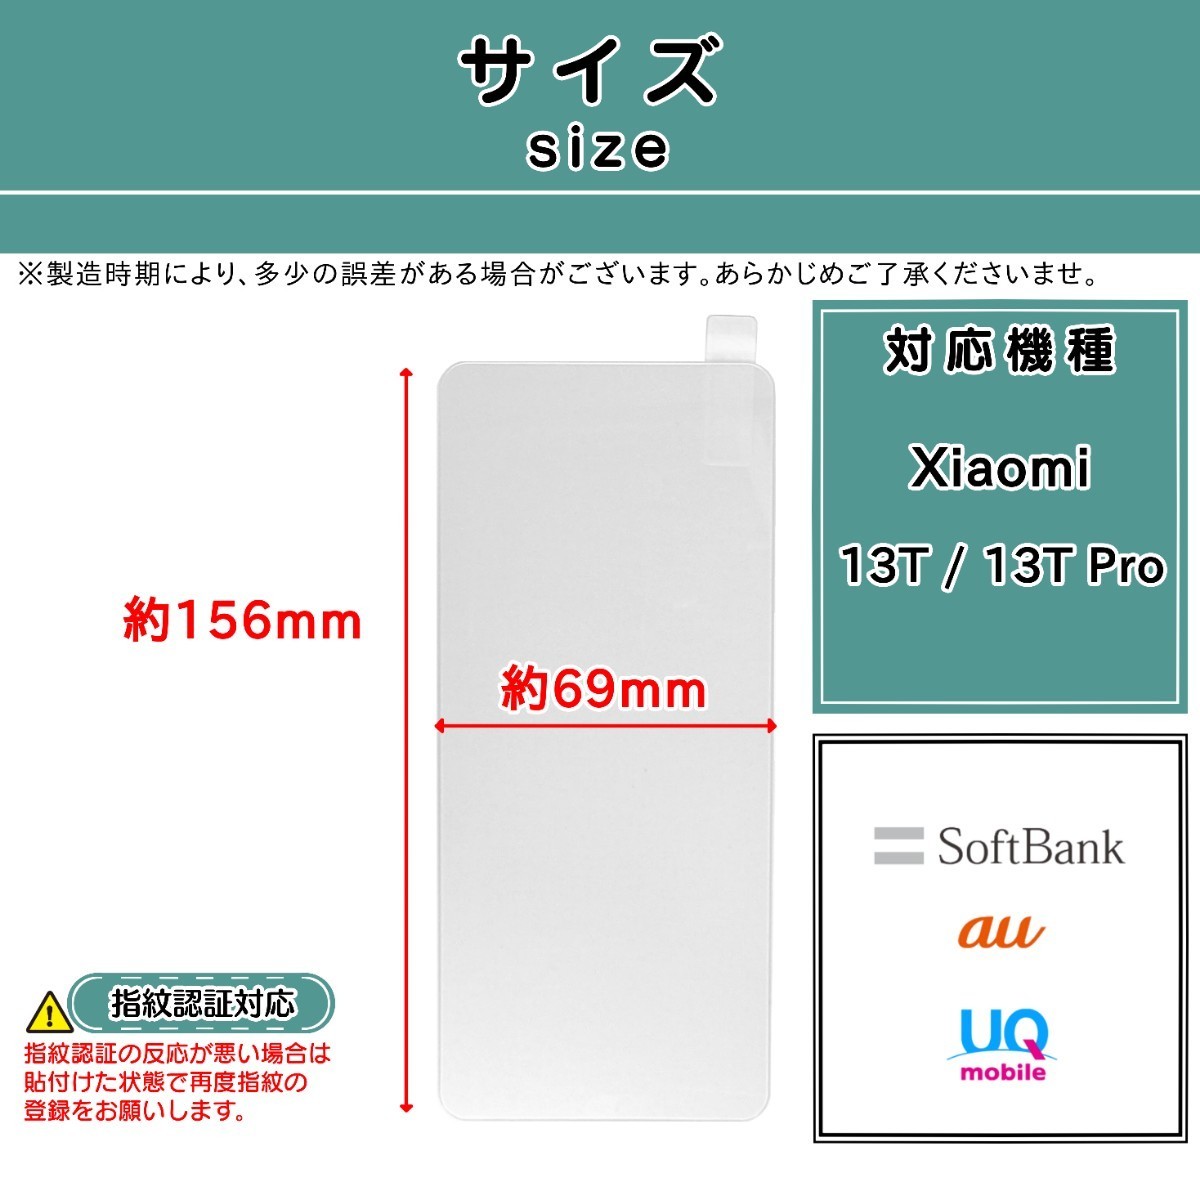 【新品】Xiaomi 13T / 13T Pro ガラスフィルム シャオミ サーティーン・ティー・プロ _画像2